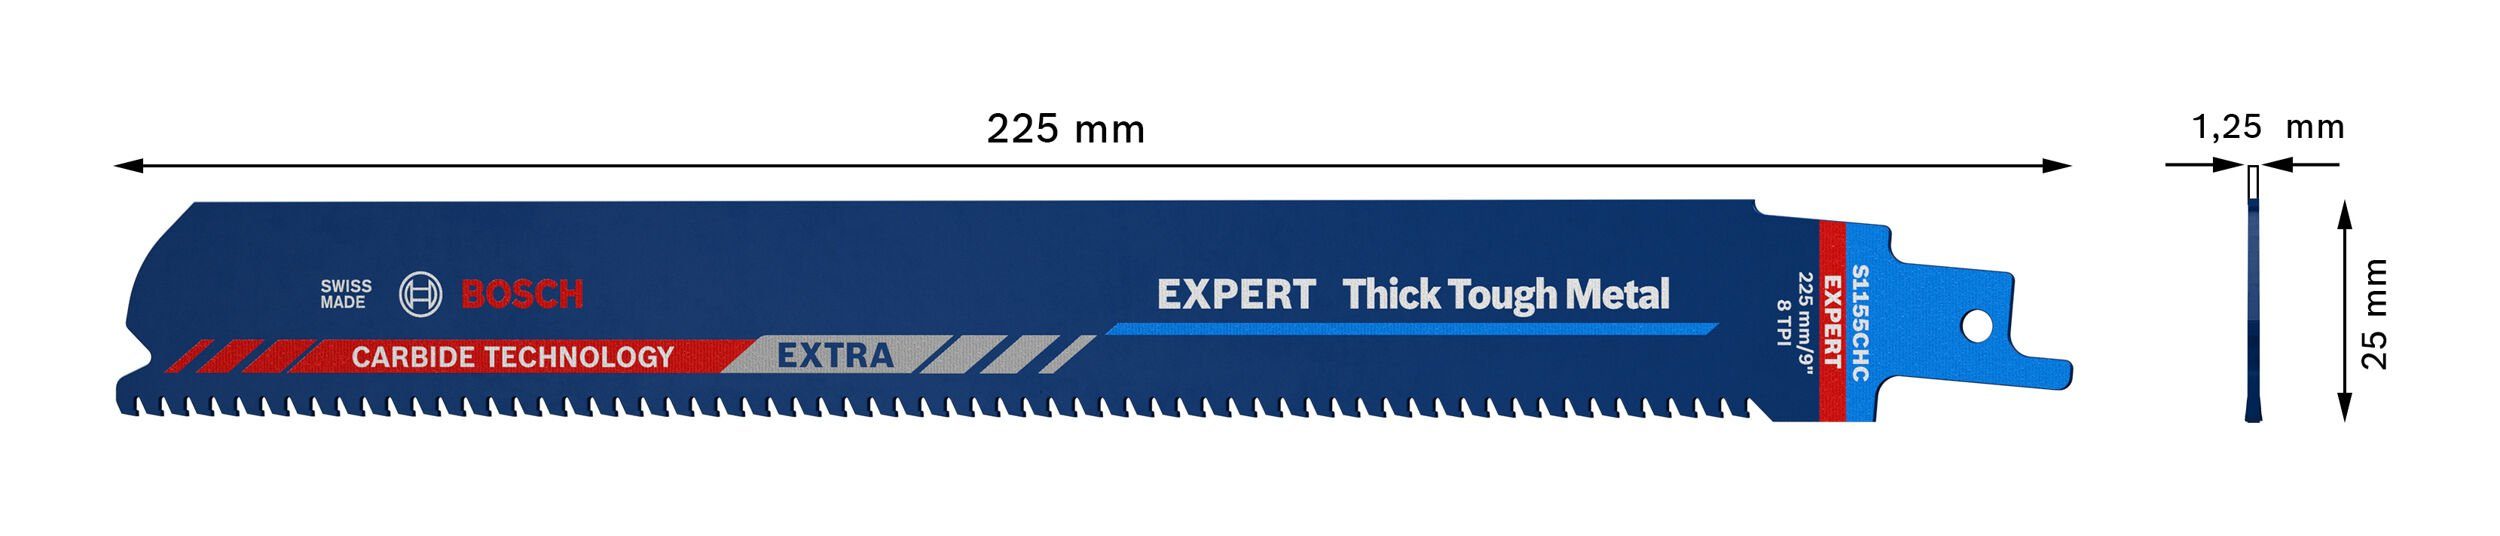 Thick Metal, CHM, for S HeavyMetal Säbelsägeblatt 1155 Expert Expert Endurance BOSCH Tough